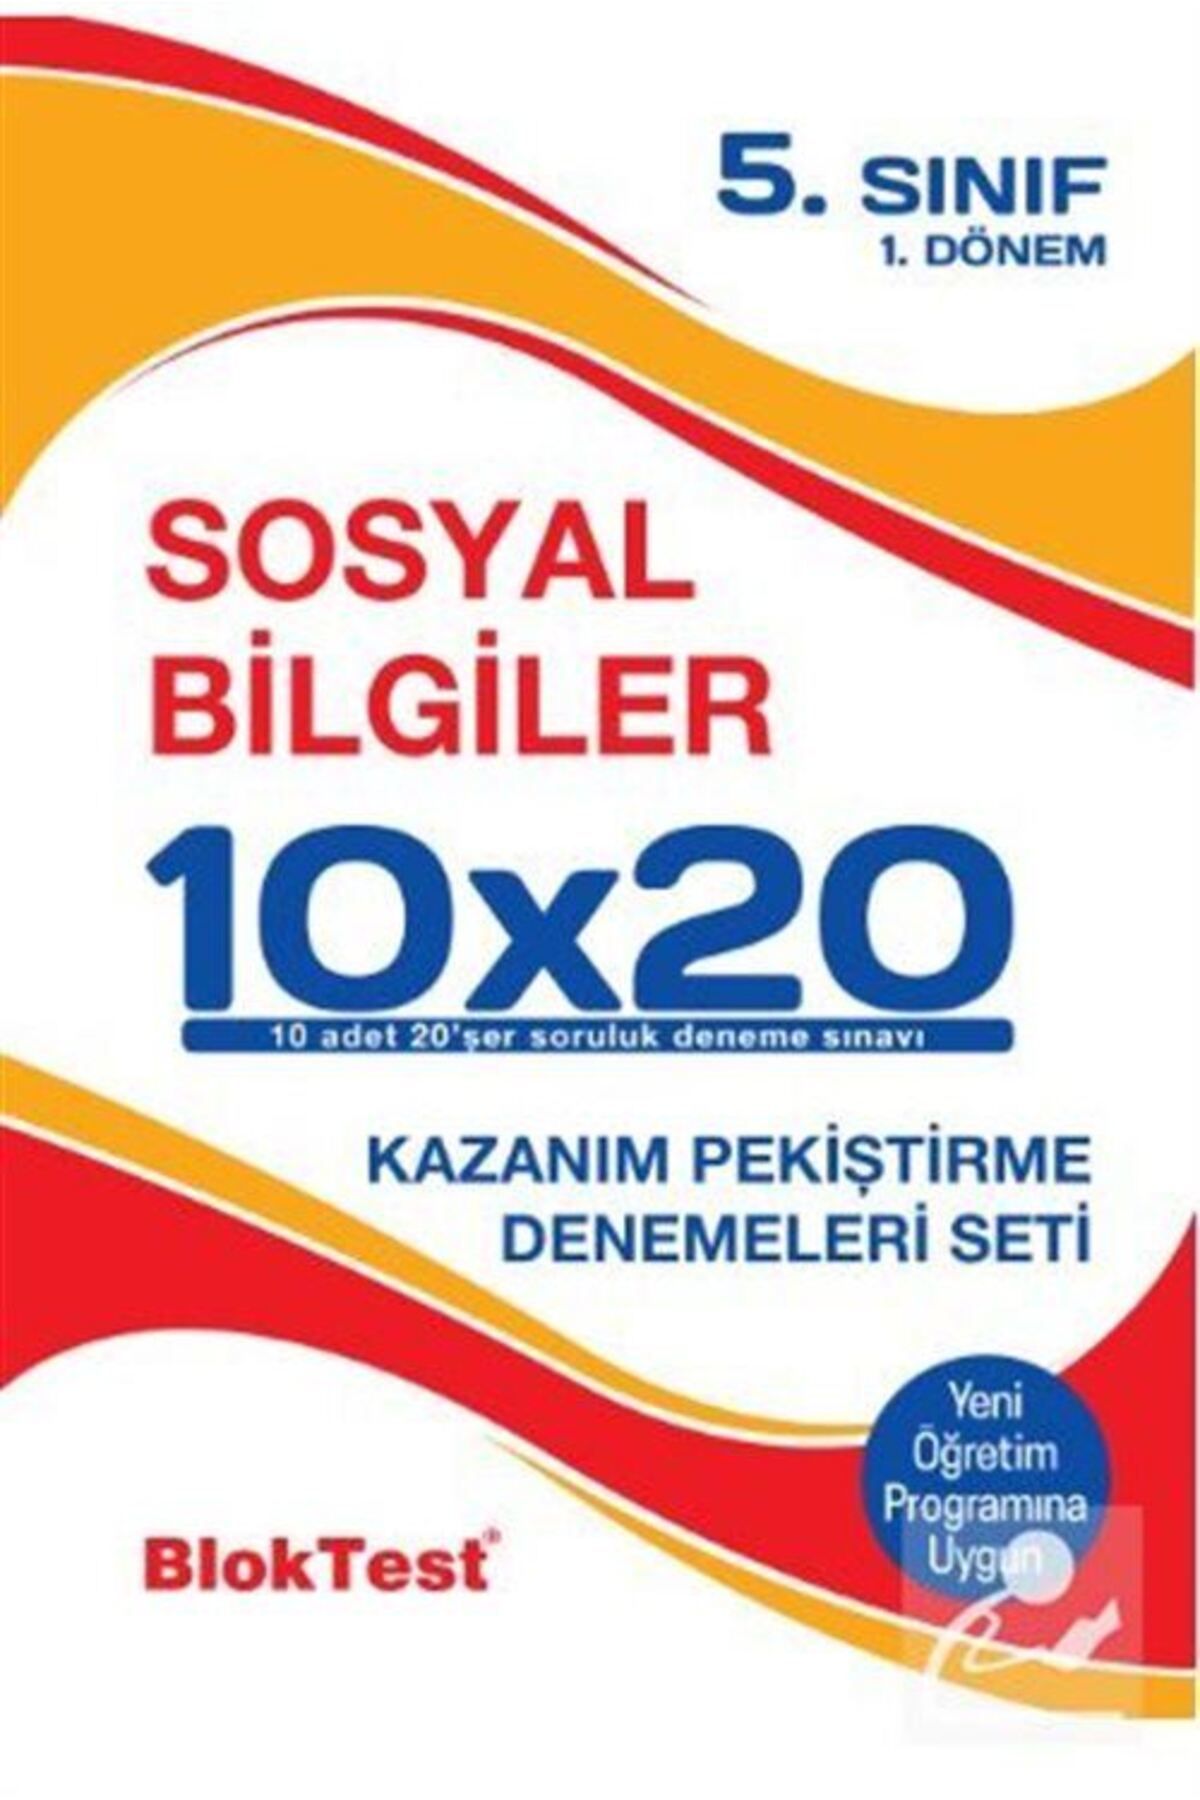 Tudem Yayınları 5. Sınıf 1.dönem Sosyal Bilgiler 10x20 Kazanım Pekiştirme Denemeleri Seti